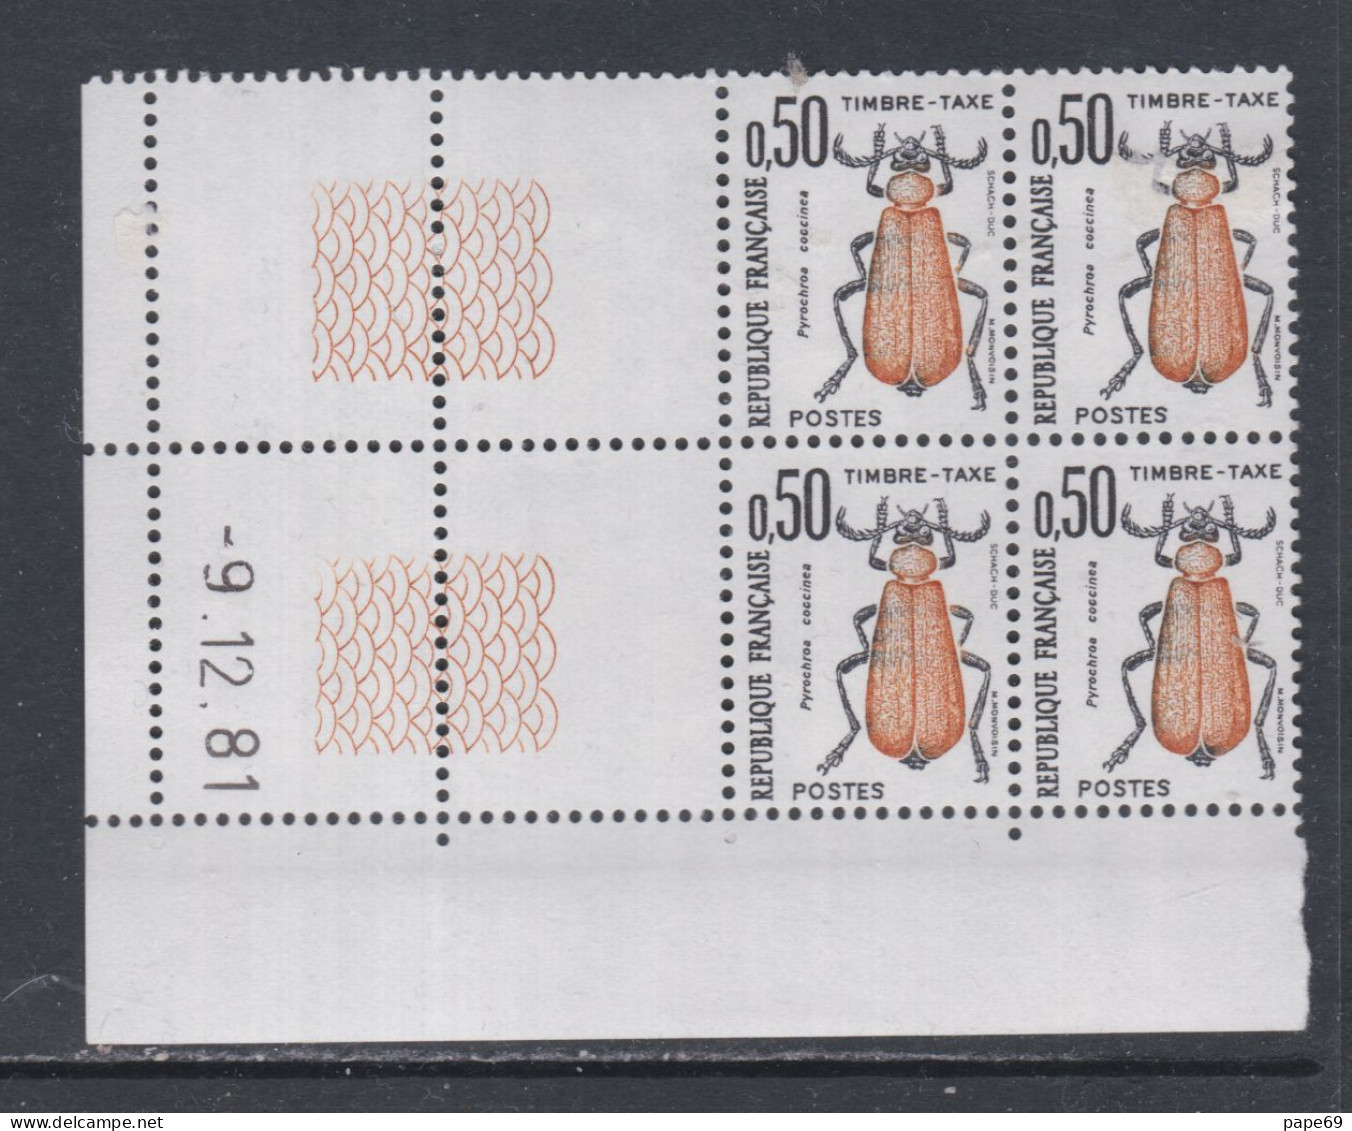 France Timbres-Taxe N° 105 XX Insectes : 50 C. Coléoptère, En Bloc De 4 Coin Daté Du 9 . 12 . 81 ; Sans Trait, Ss Ch. TB - Portomarken